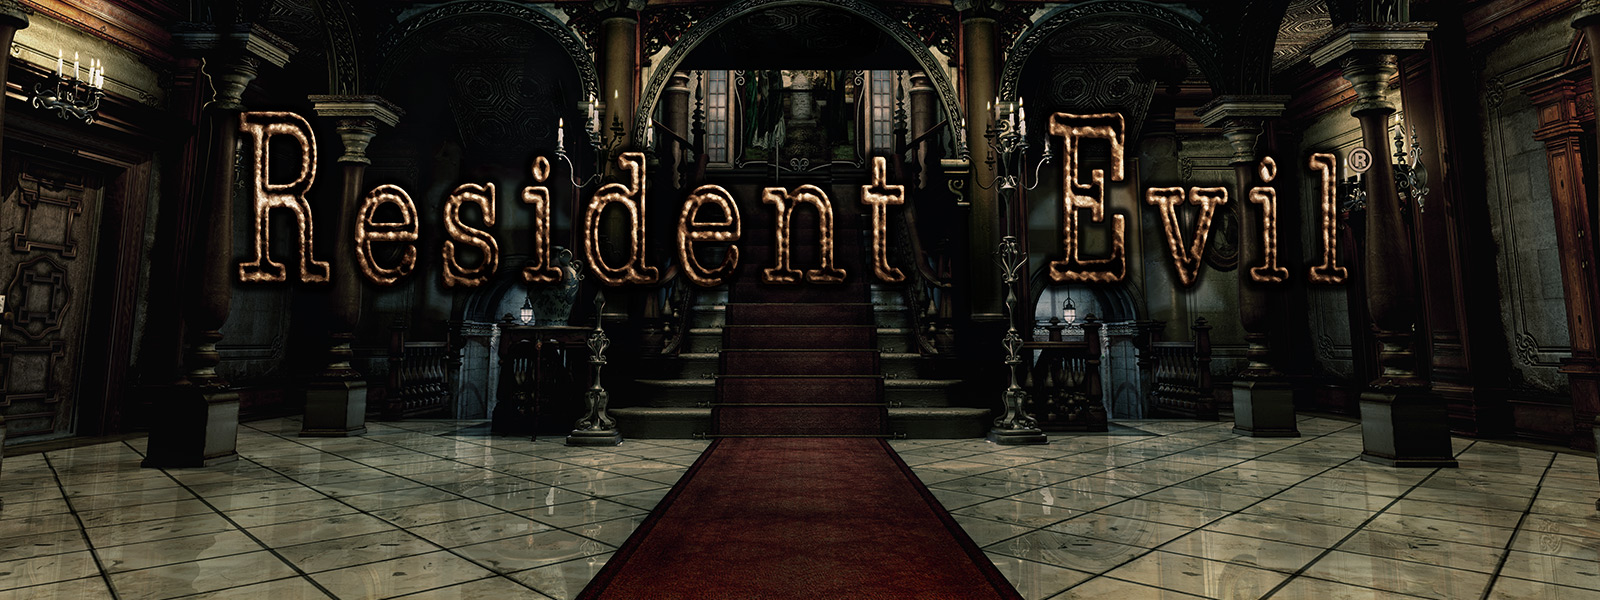 Resident Evil, zdjęcie ogromnego westybulu z czerwonymi dywanami na schodach